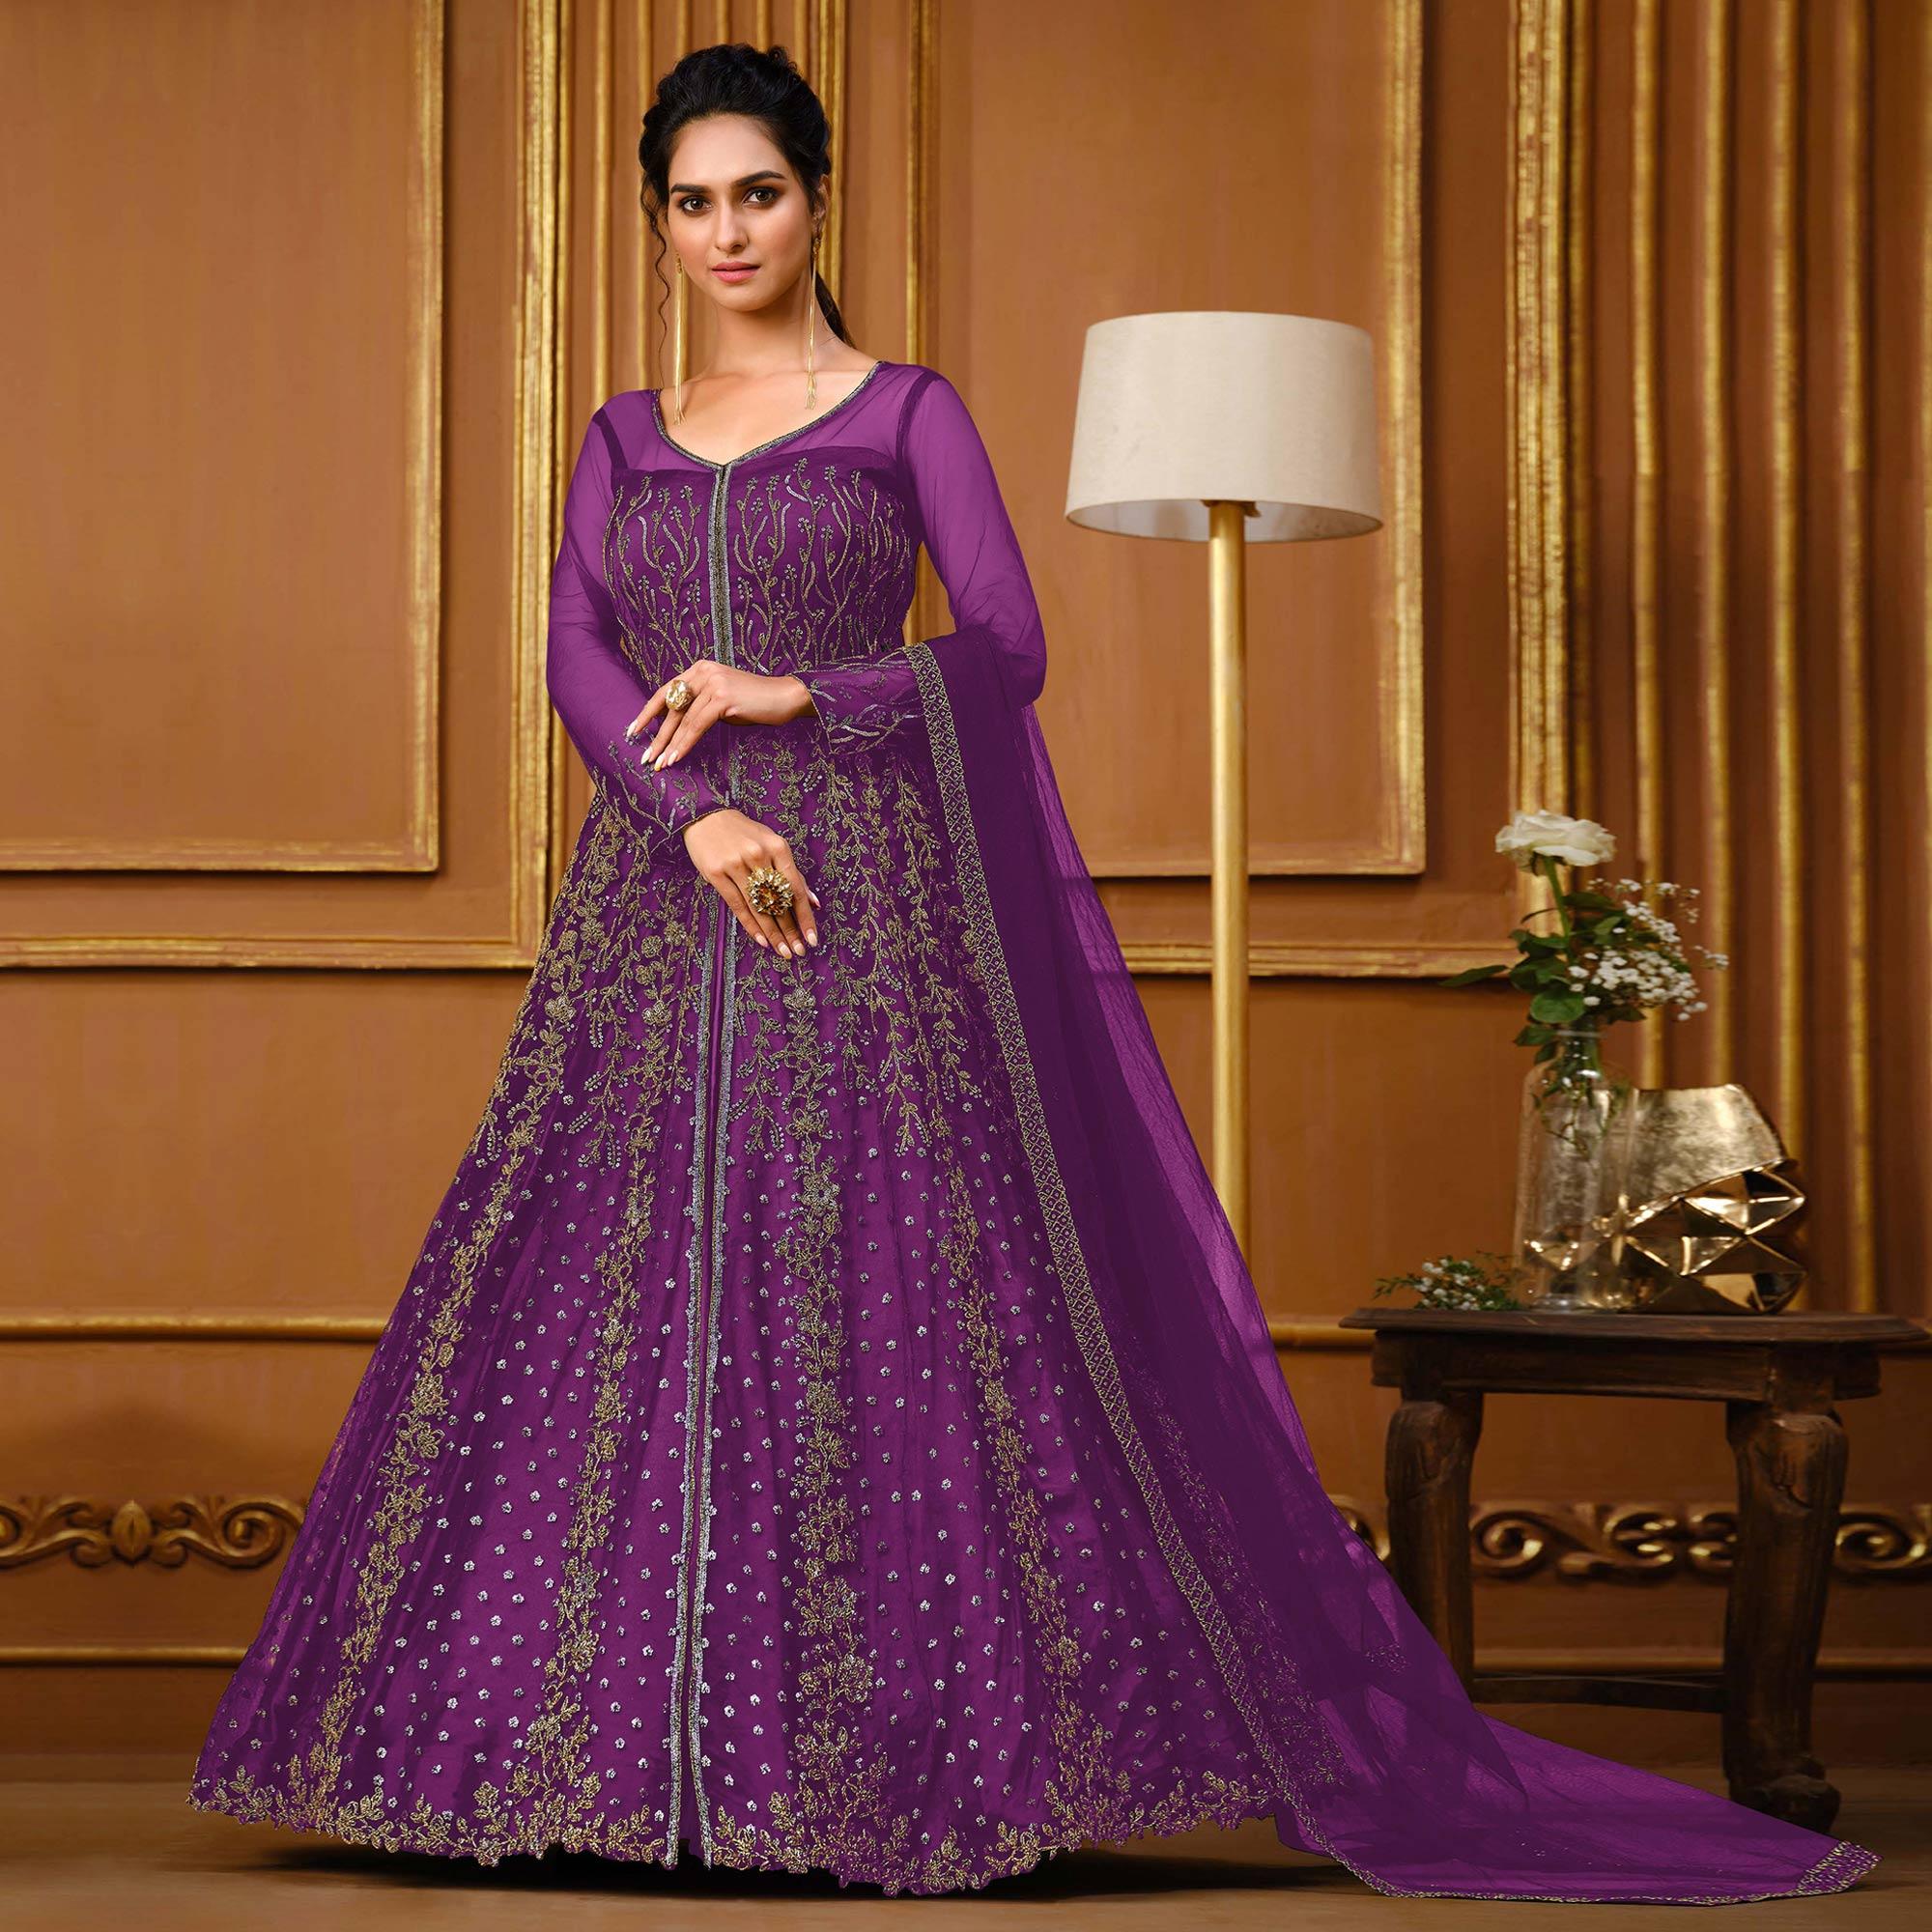 Simple Elegant Dress | Fully Lined | Violet Color | Elegant dress, Simple  elegant dress, Colorful dresses